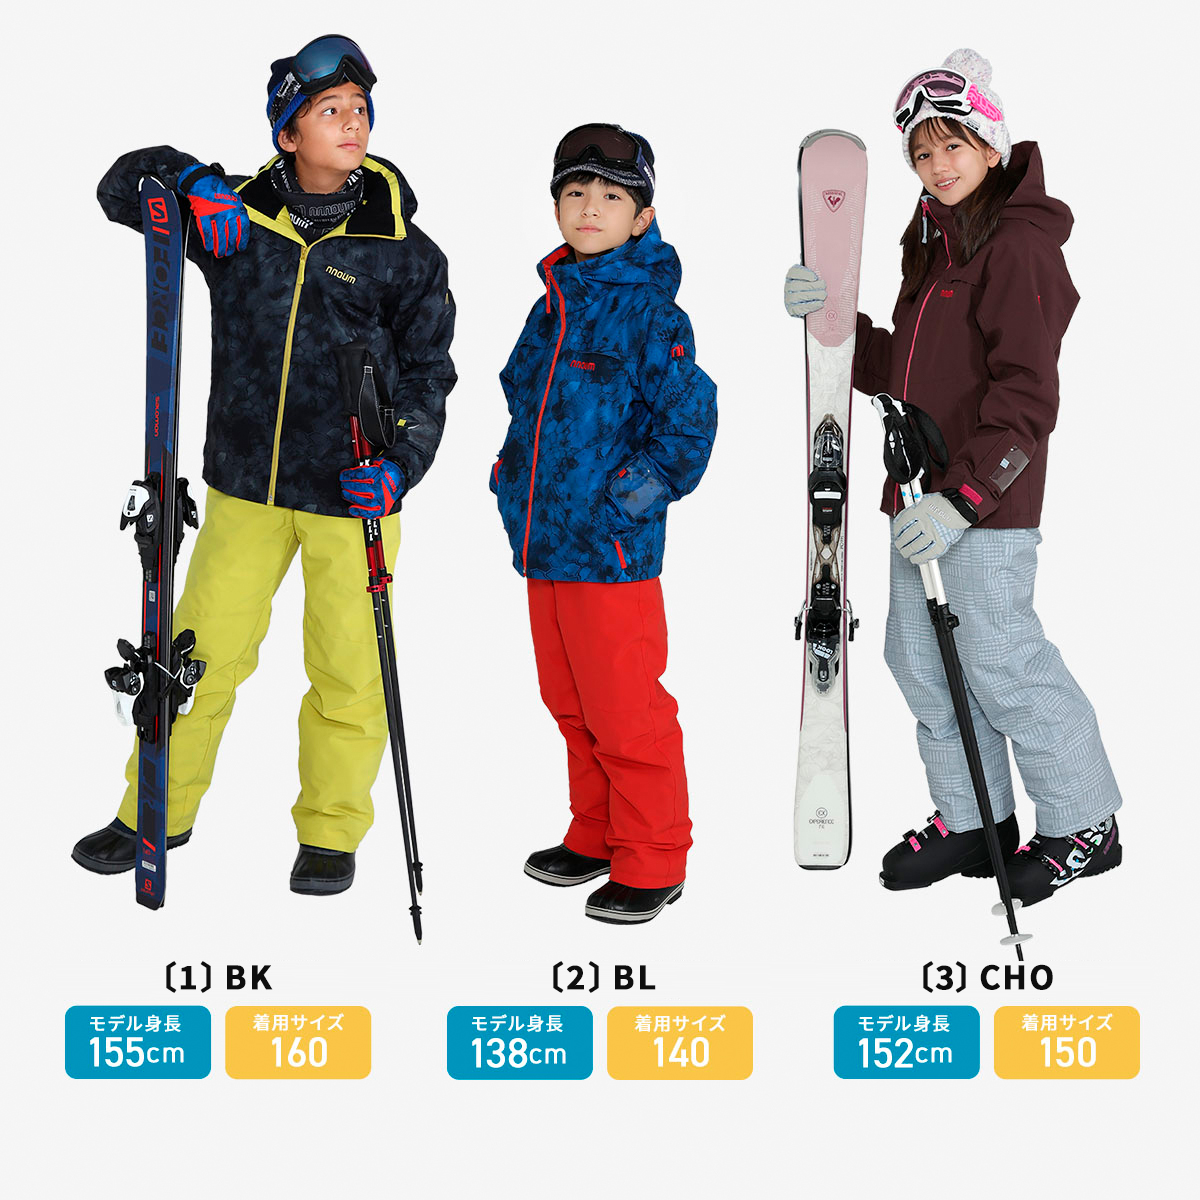  лыжи одежда Kids Junior верх и низ в комплекте зимняя одежда одежда для сноуборда NNOUM Noah m детский мужчина девочка размер регулировка 120 130 140 150 160